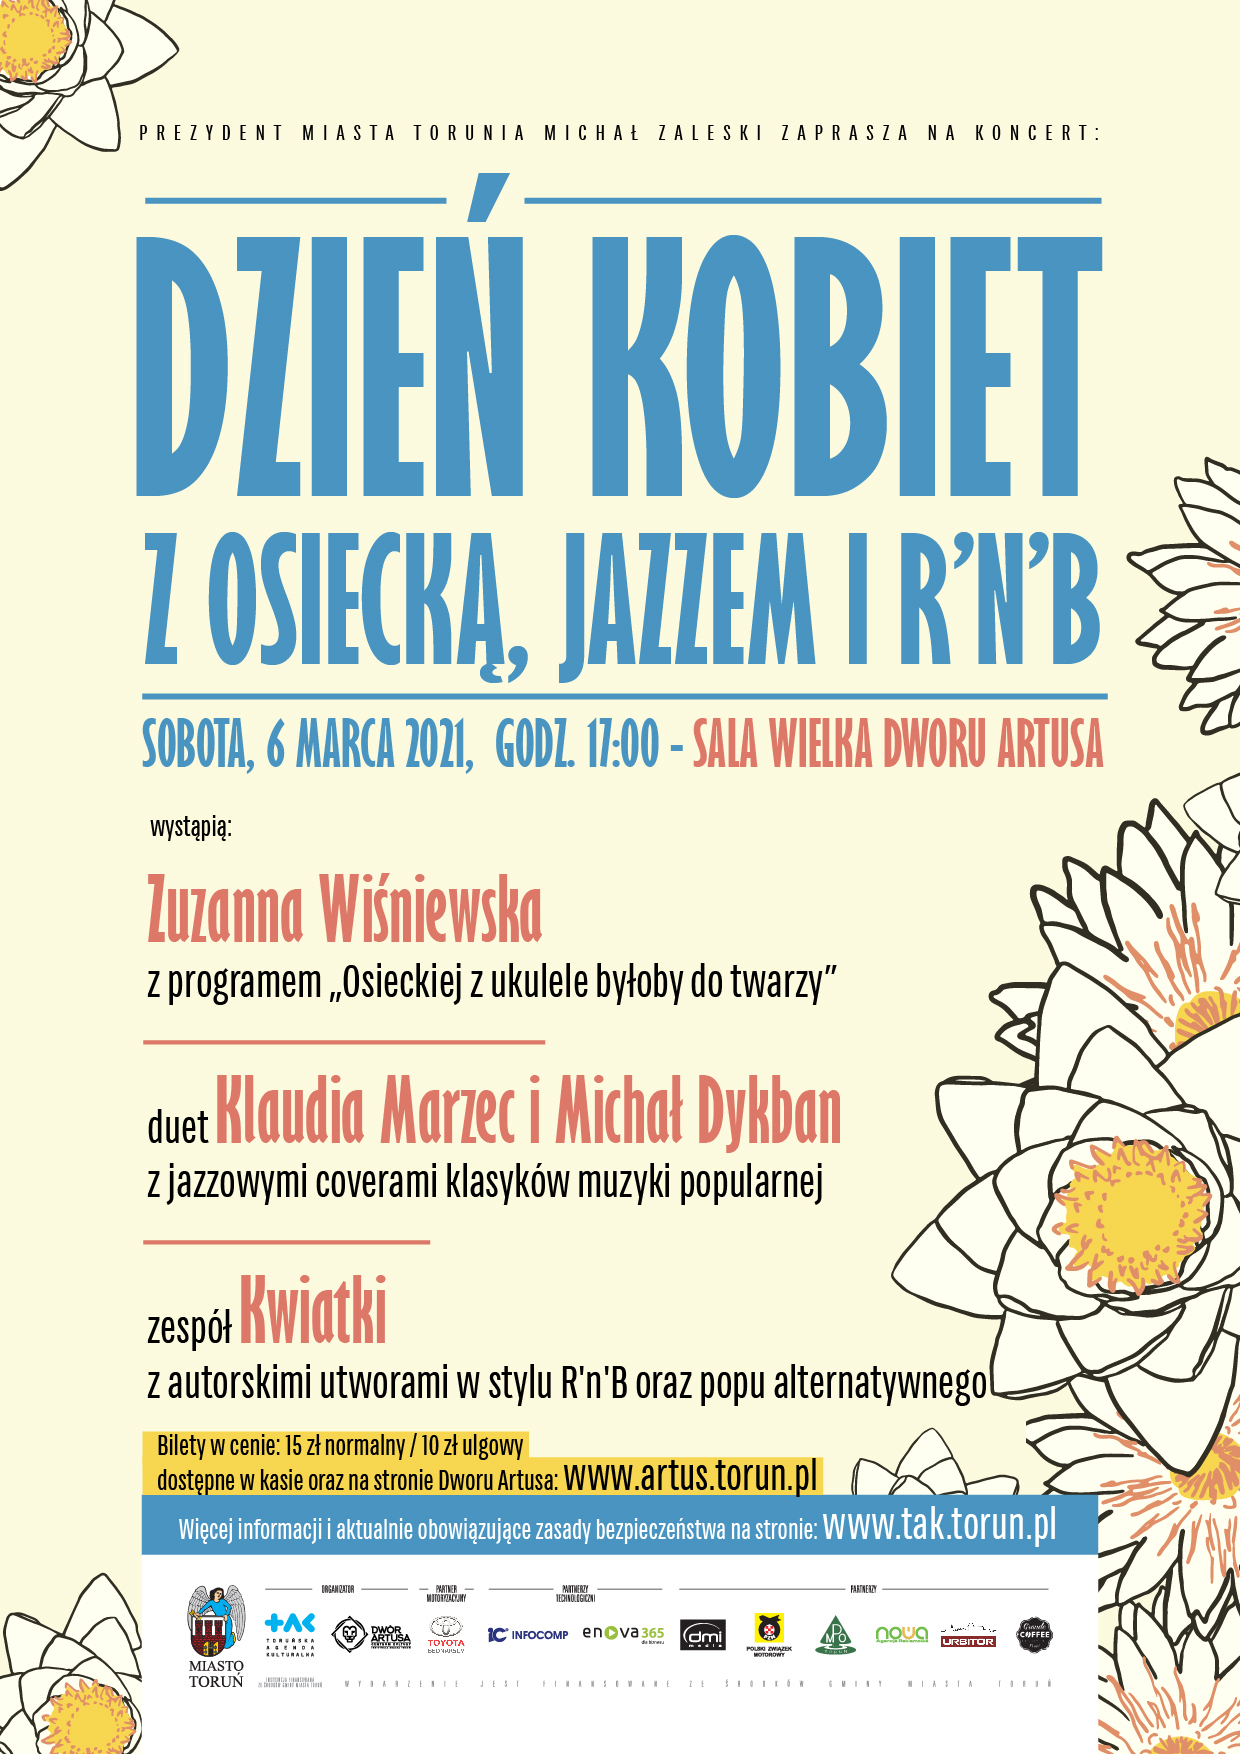 Afisz informacyjny Dnia Kobiet | 6.03.2021 | Zuzanna Wiśniewska | Klaudia Marzec i Michał Dykban | Kwiatki